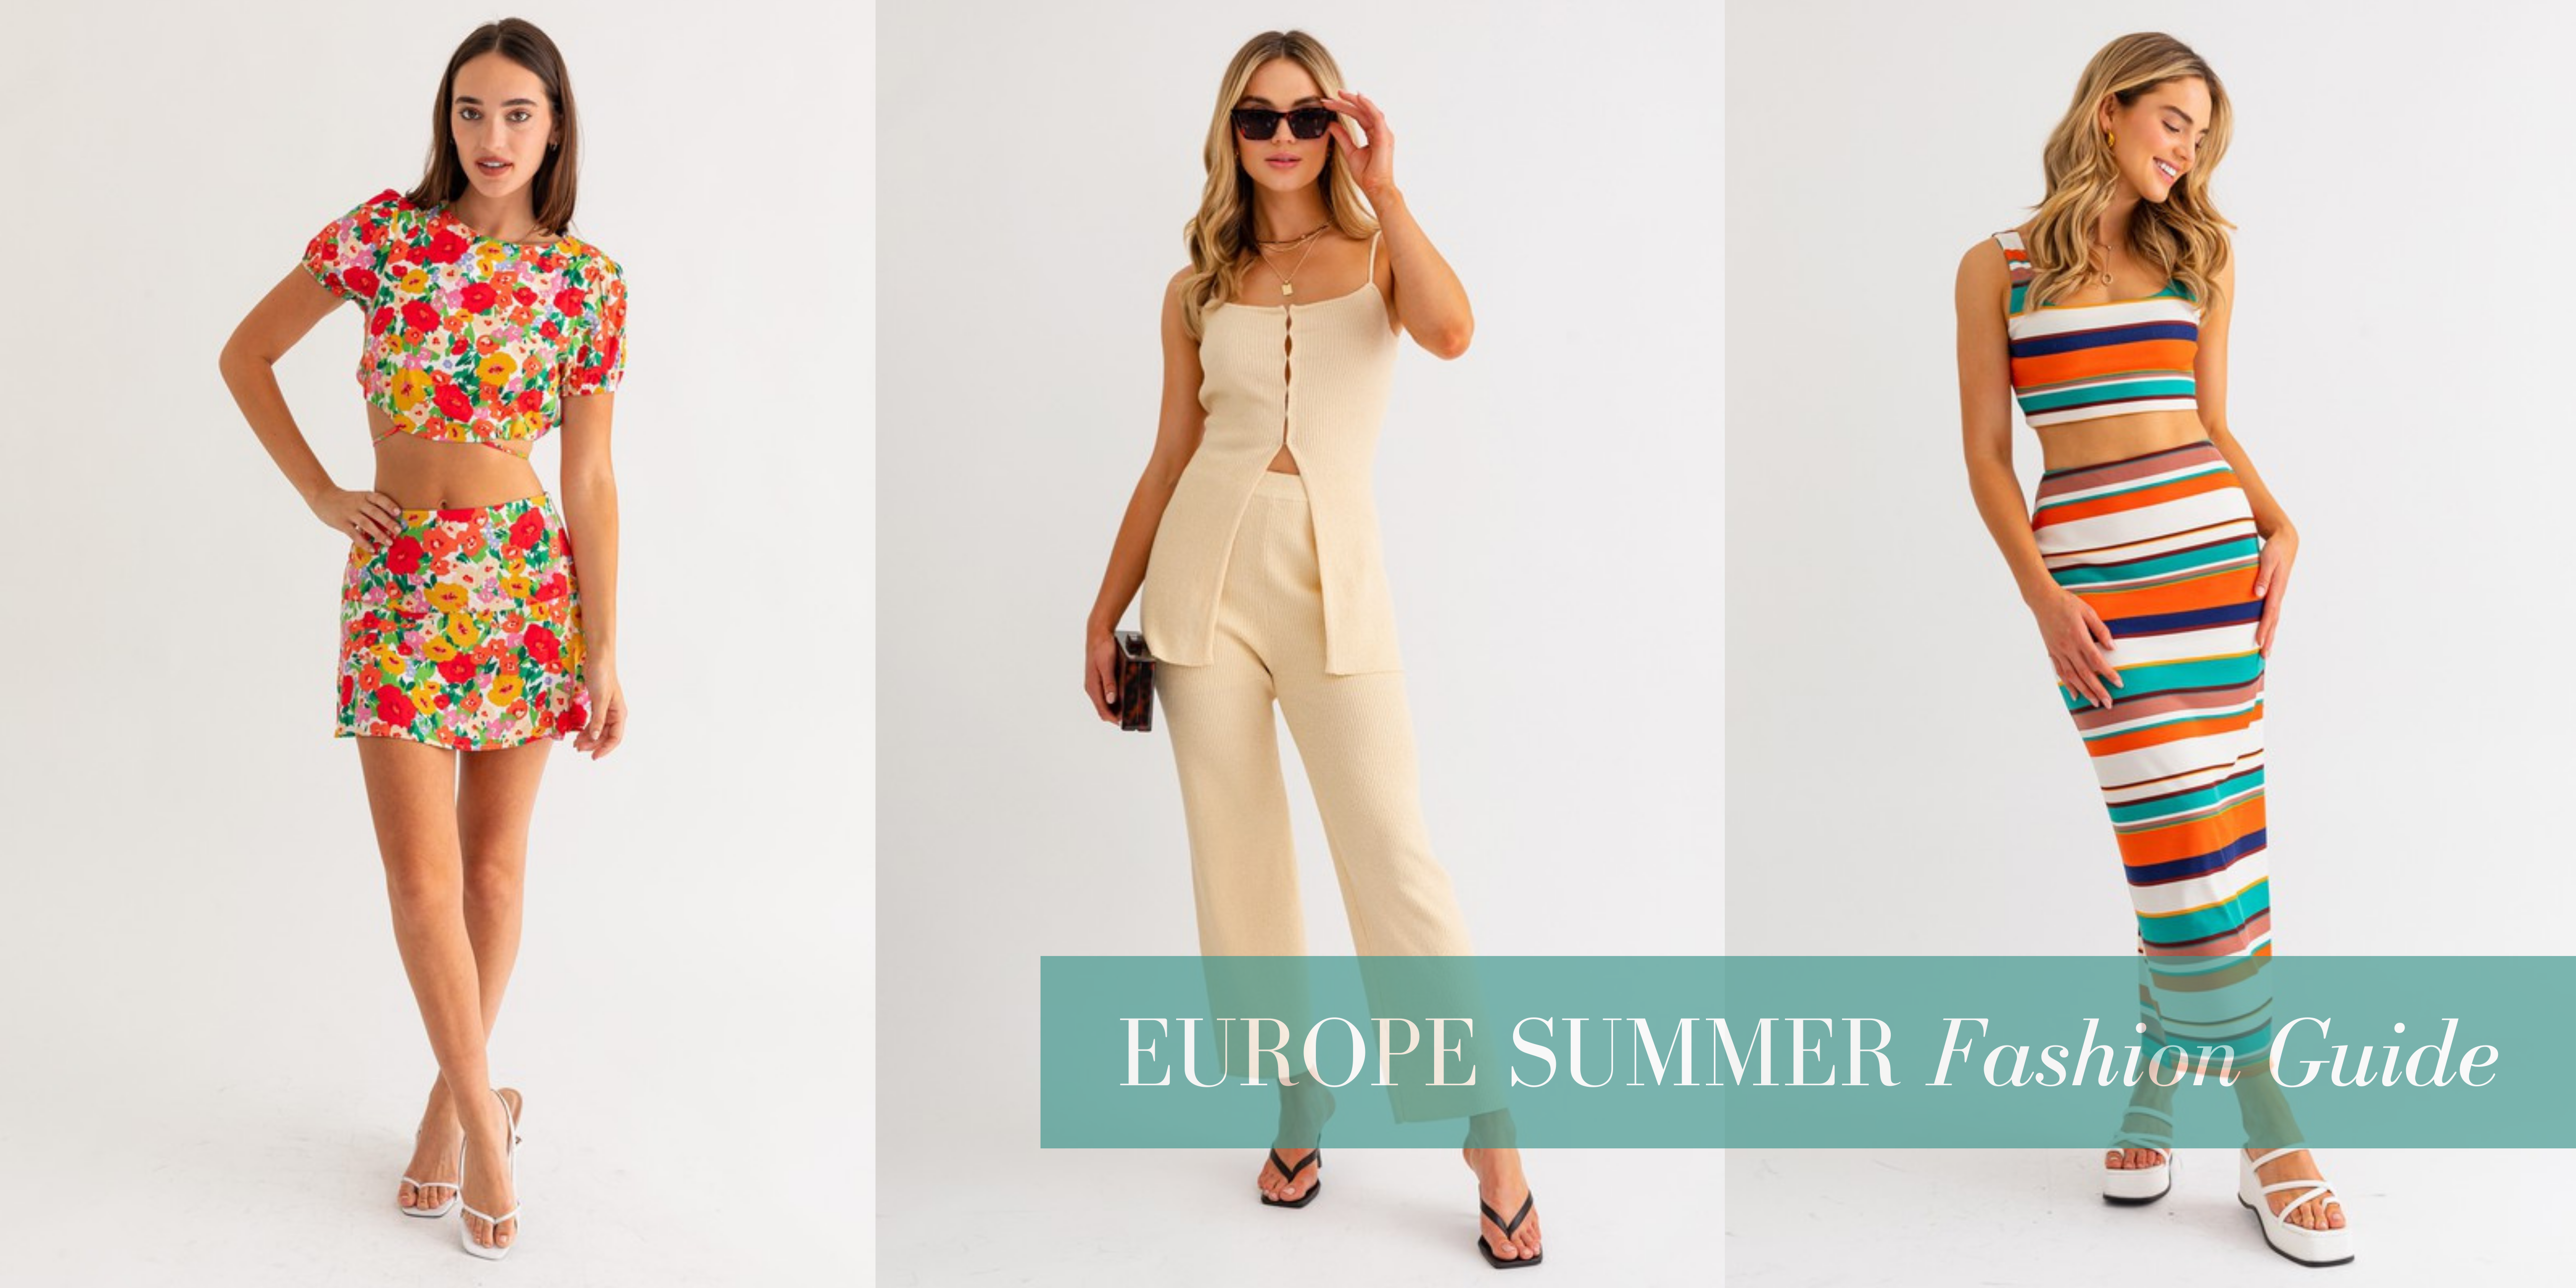 European Summer Fashion Guide